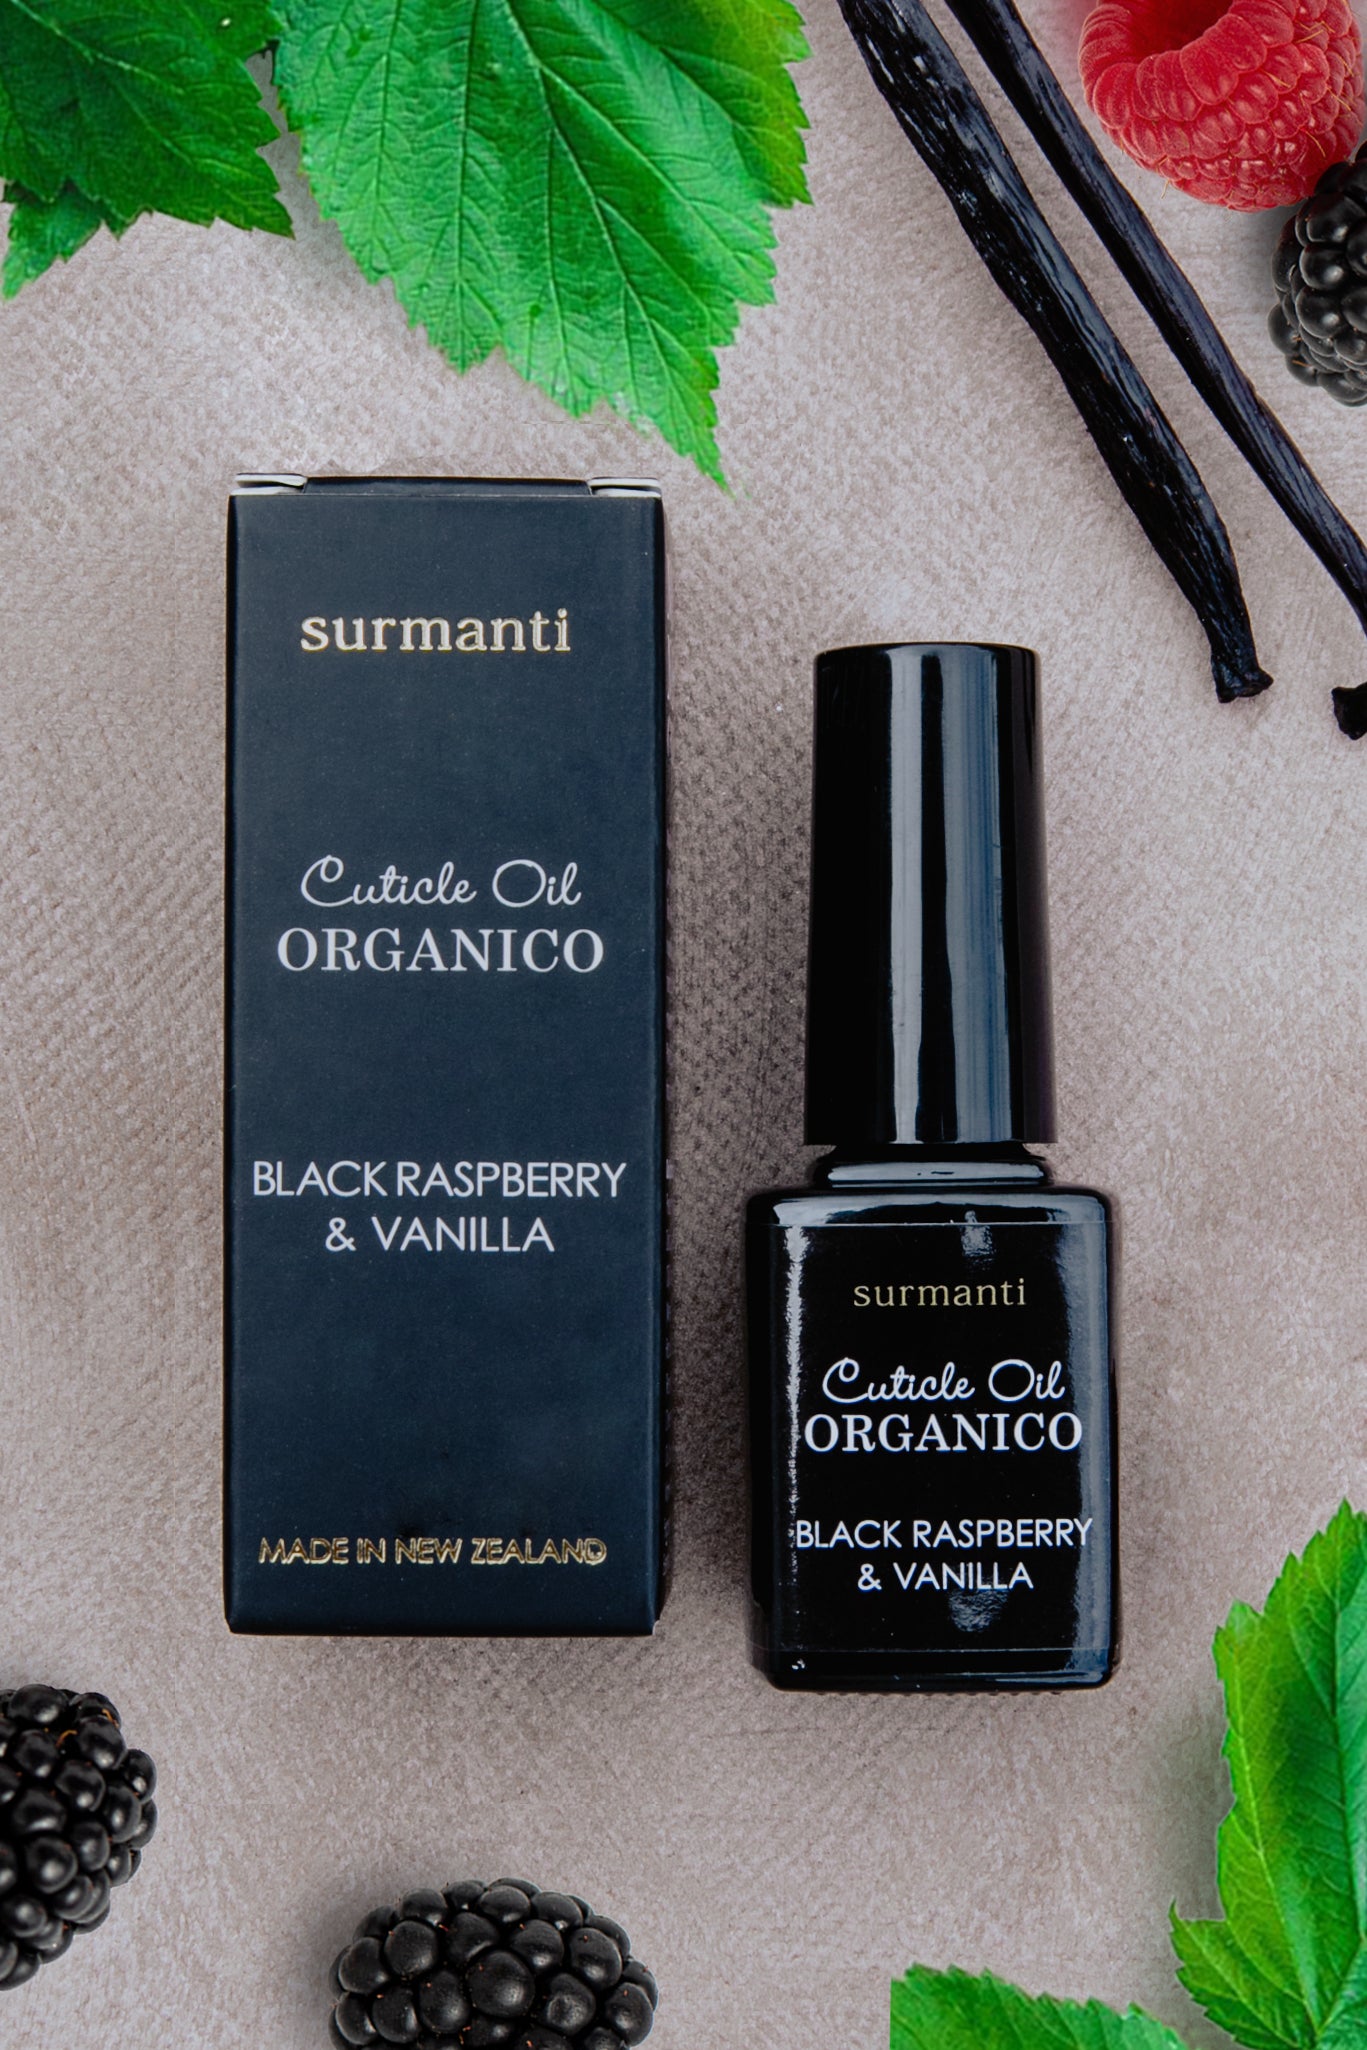 Black Raspberry & Vanilla Organico Cuticle Oil